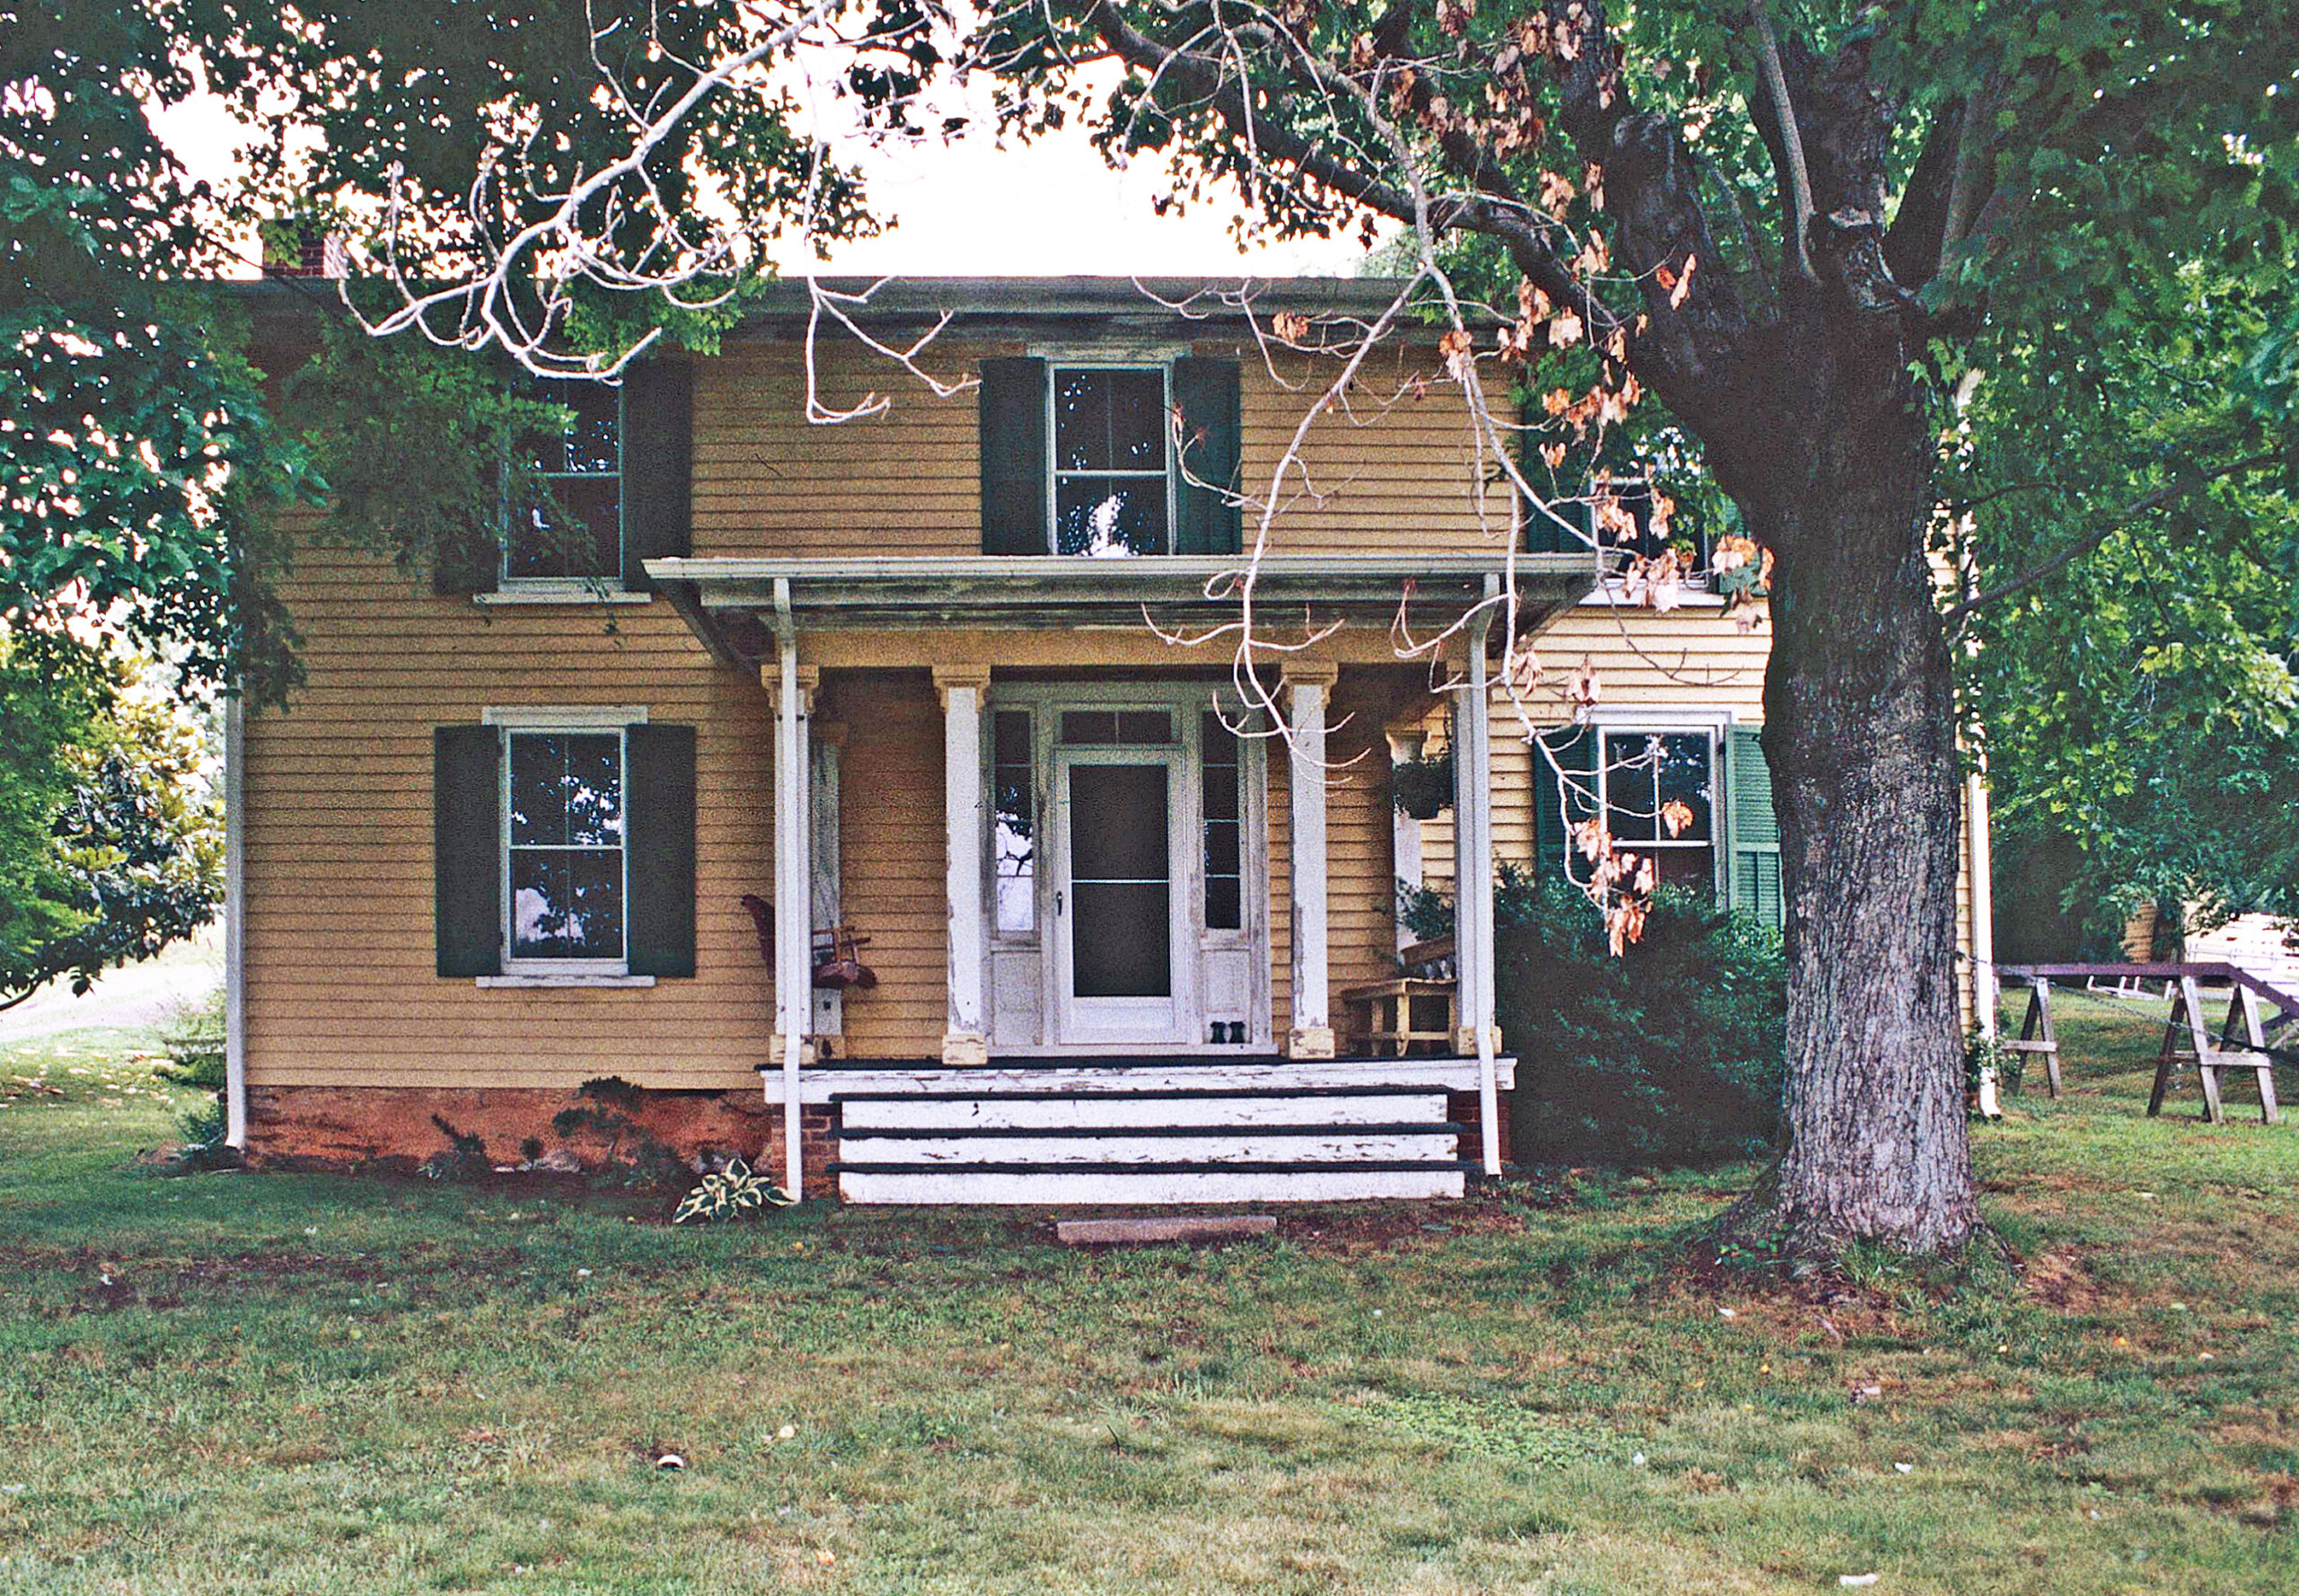 Main Dwelling. Photo credit: Jennifer Hallock, 2005